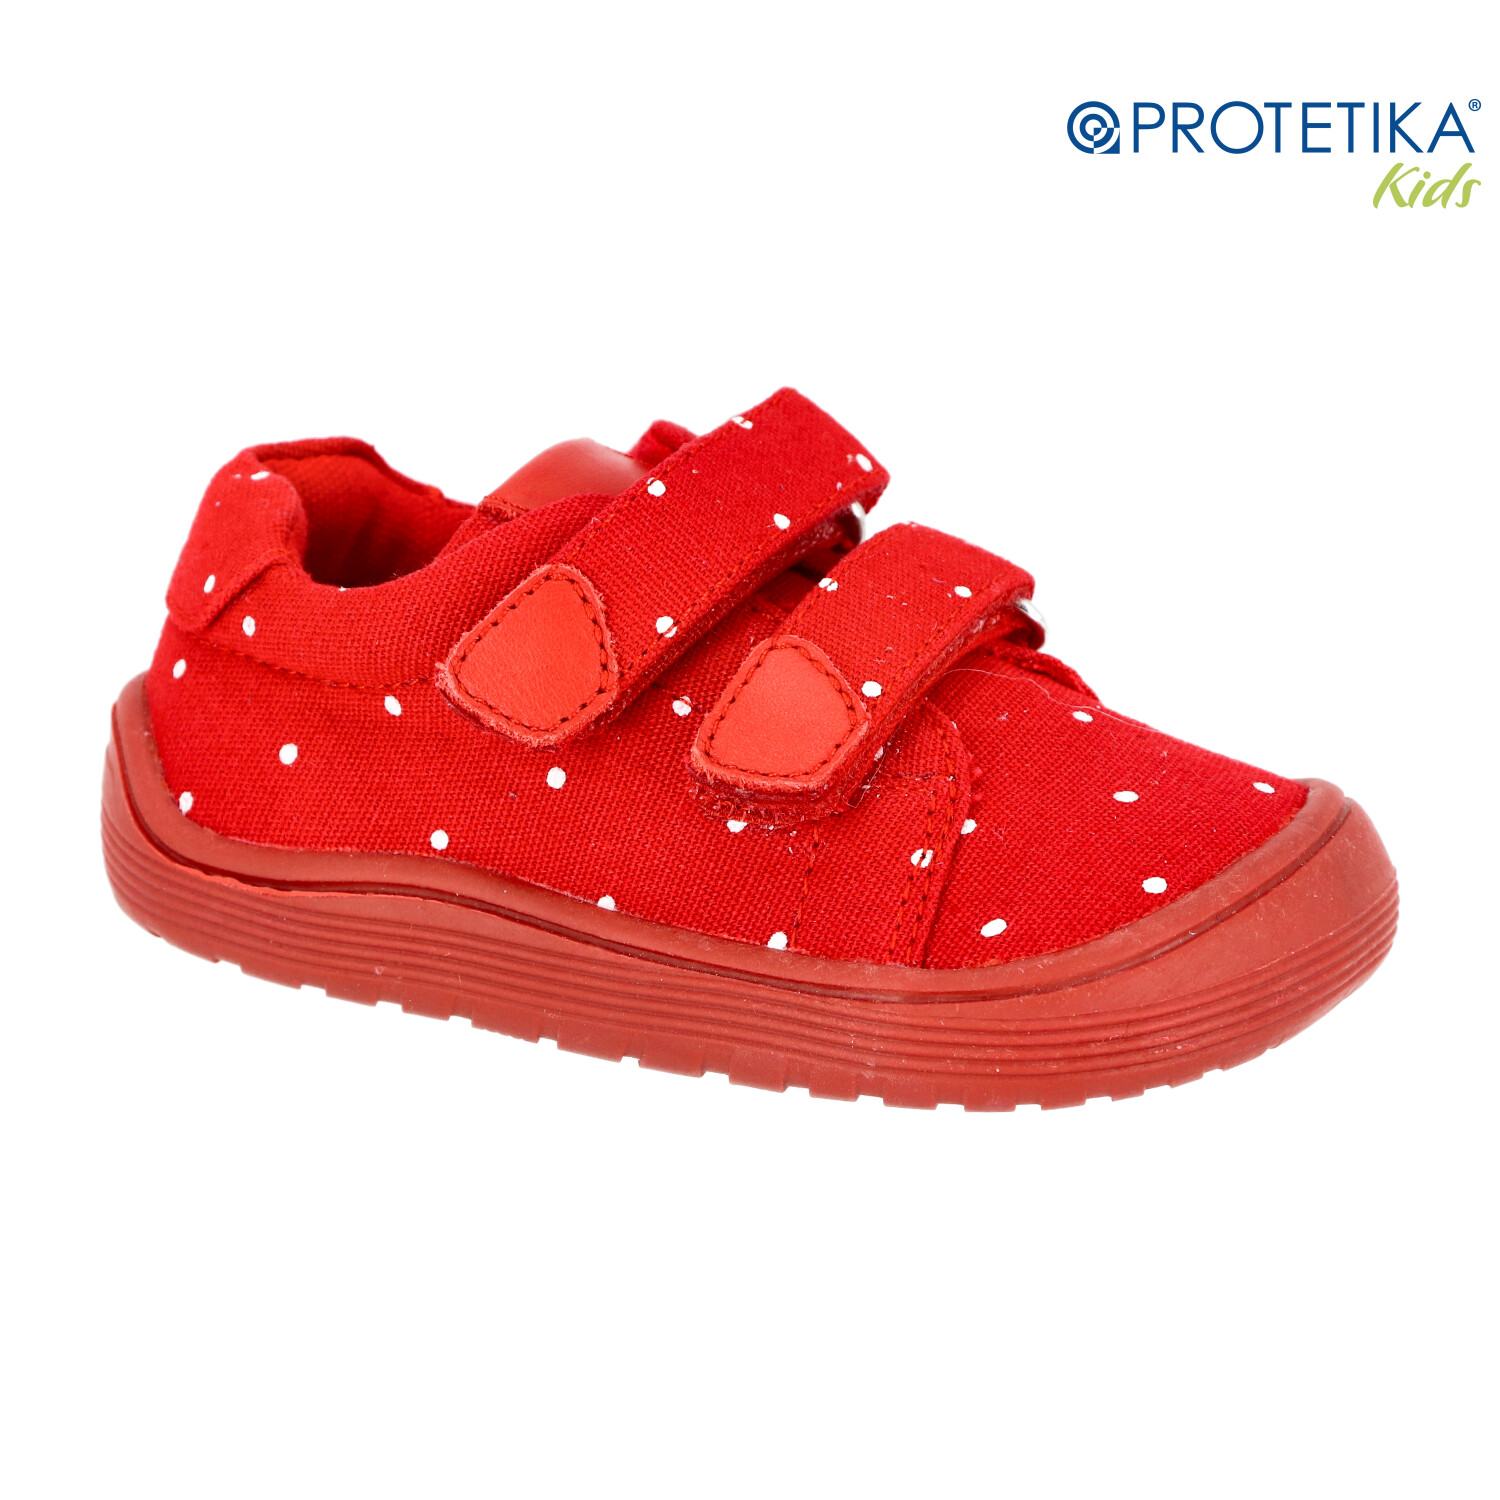 Protetika - barefootové topánky ROBY red